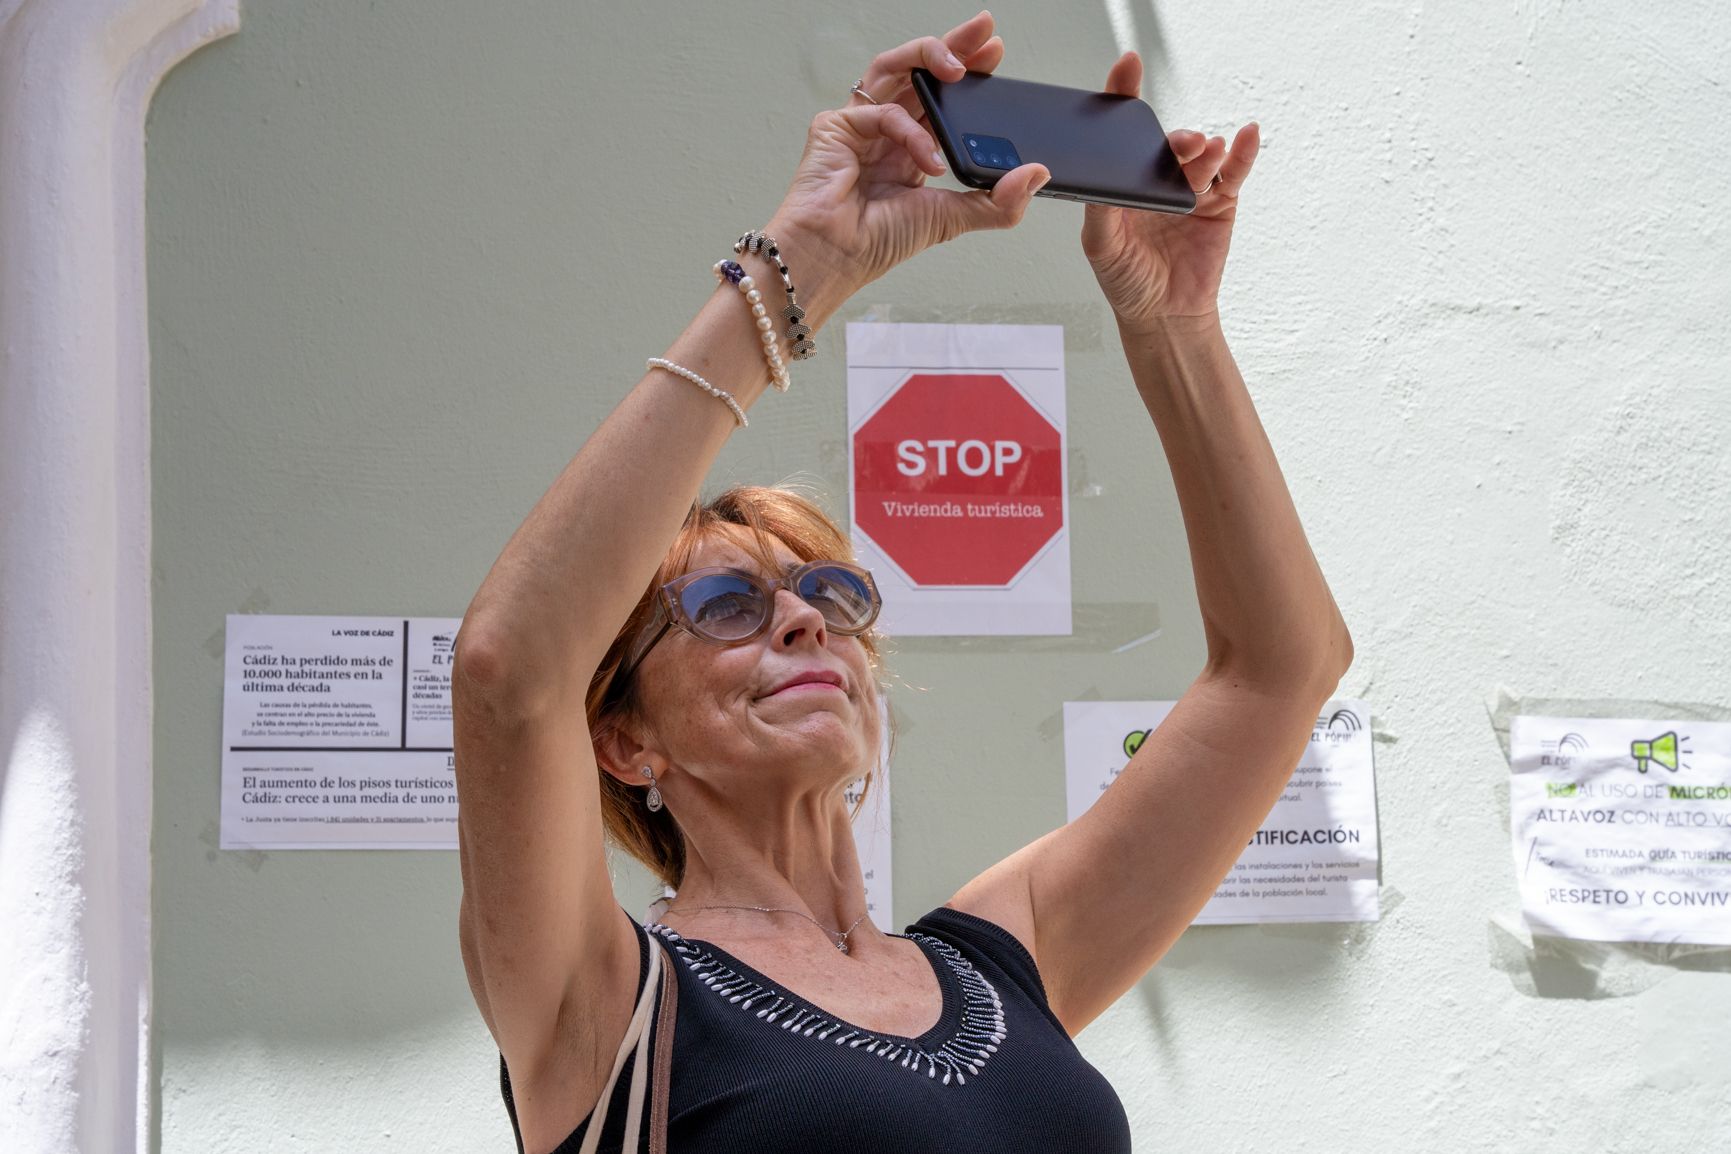 Una turista toma fotos en El Pópulo rodeada de carteles contra la "turistificación".